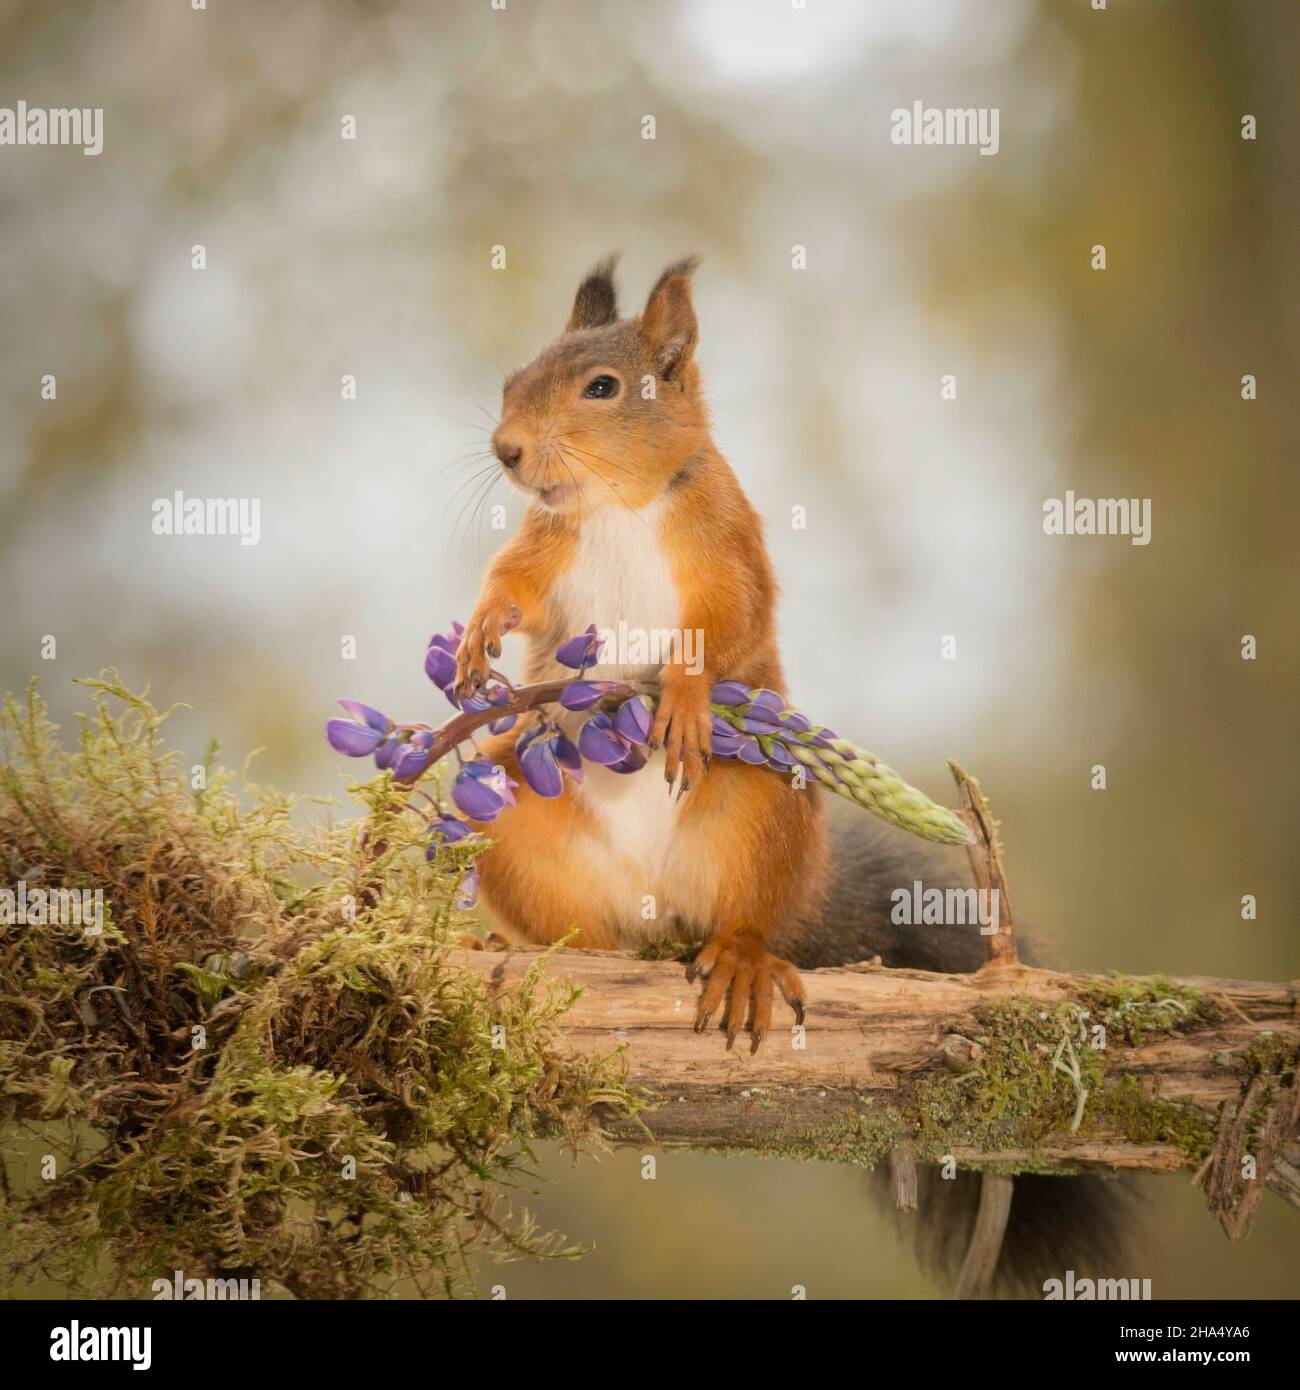 Rotes Eichhörnchen, das auf einem Baumstamm steht und eine Lupinenblume hält Stockfoto